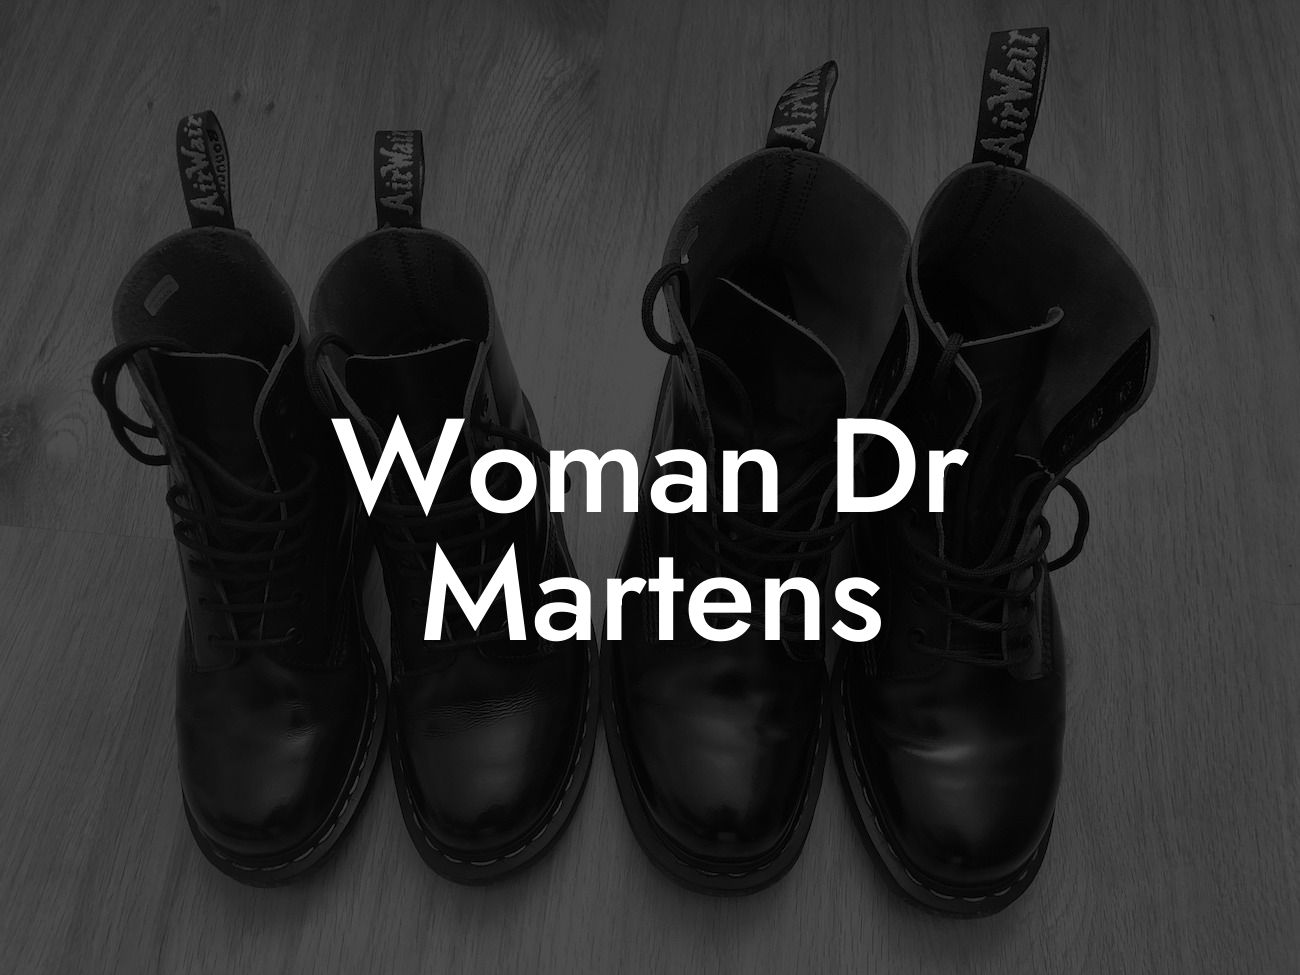 Woman Dr Martens